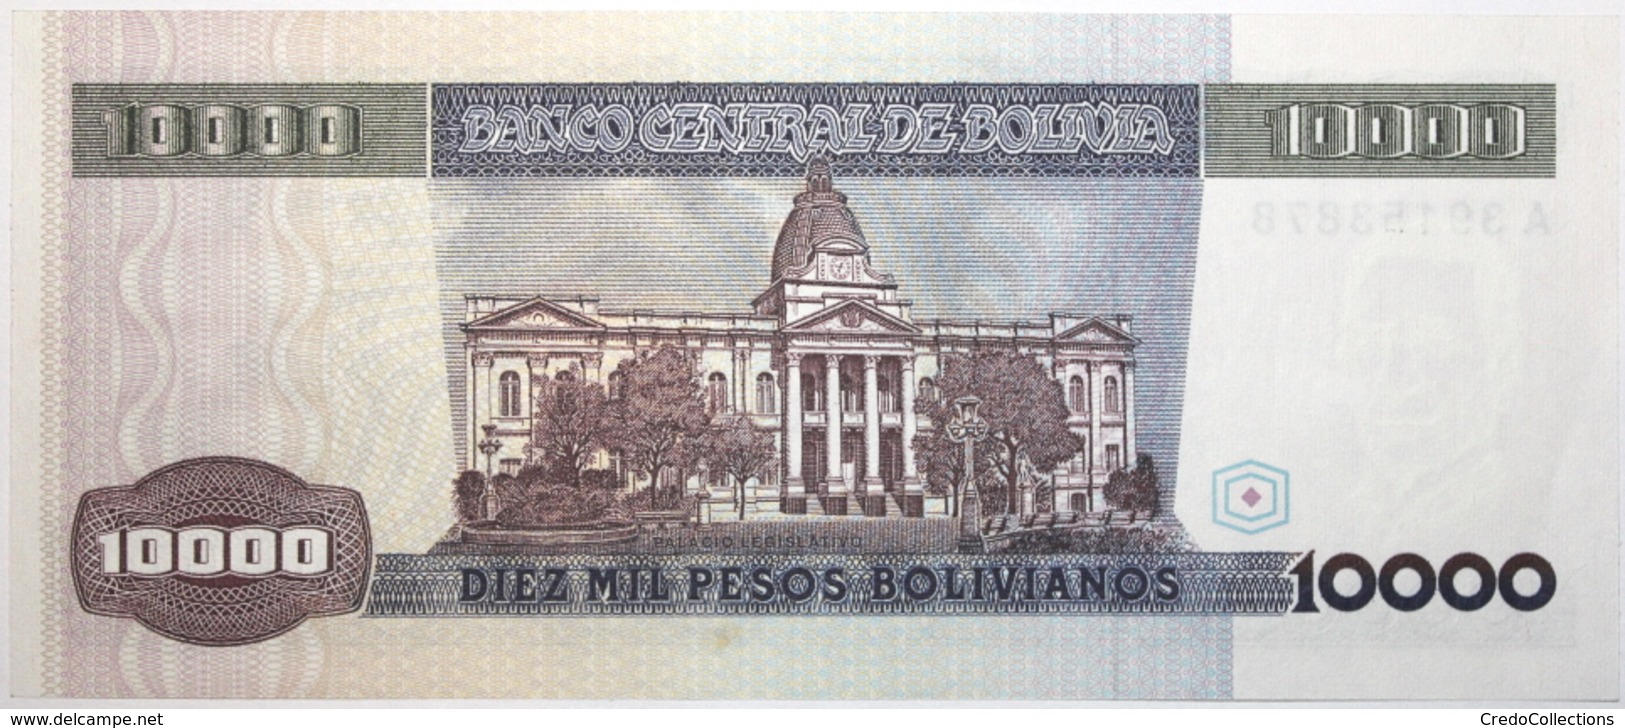 Bolivie - 10000 Pesos Bolivianos - 1984 - PICK 169a - SPL - Bolivia